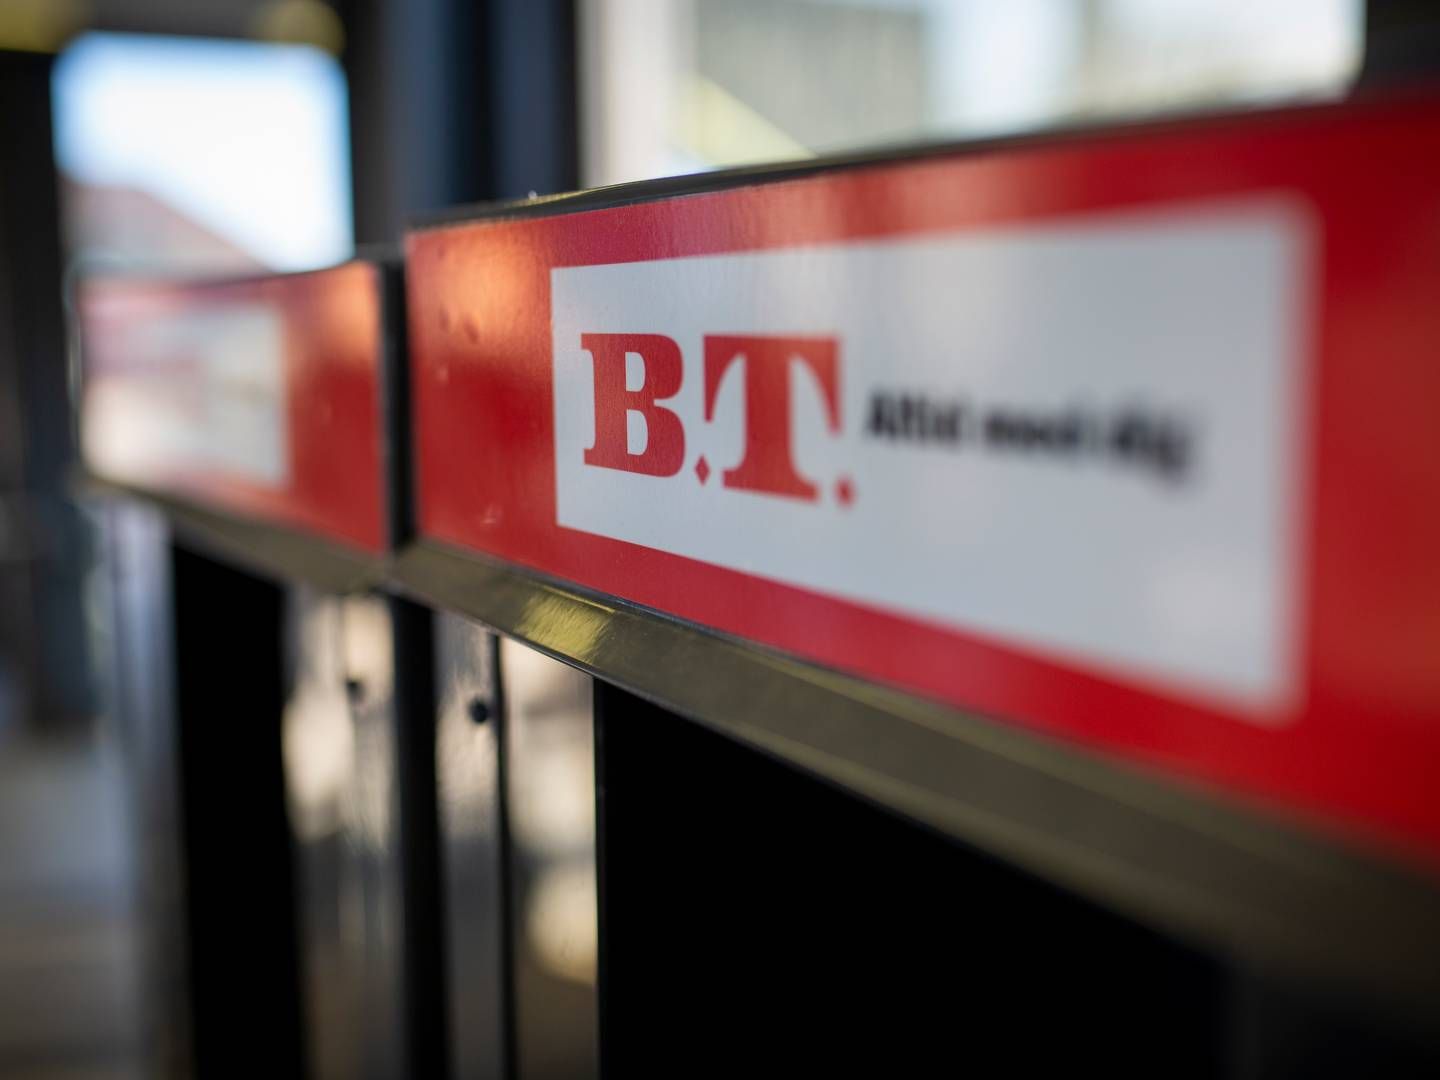 B.T.'s redaktionelle medarbejdere udtaler kritik af, at ledelsen sparer sig til overskud. Siden nytår har B.T. nedlagt printavisen og alene været en digital udgivelse. | Foto: Jens Hartmann/Ritzau Scanpix